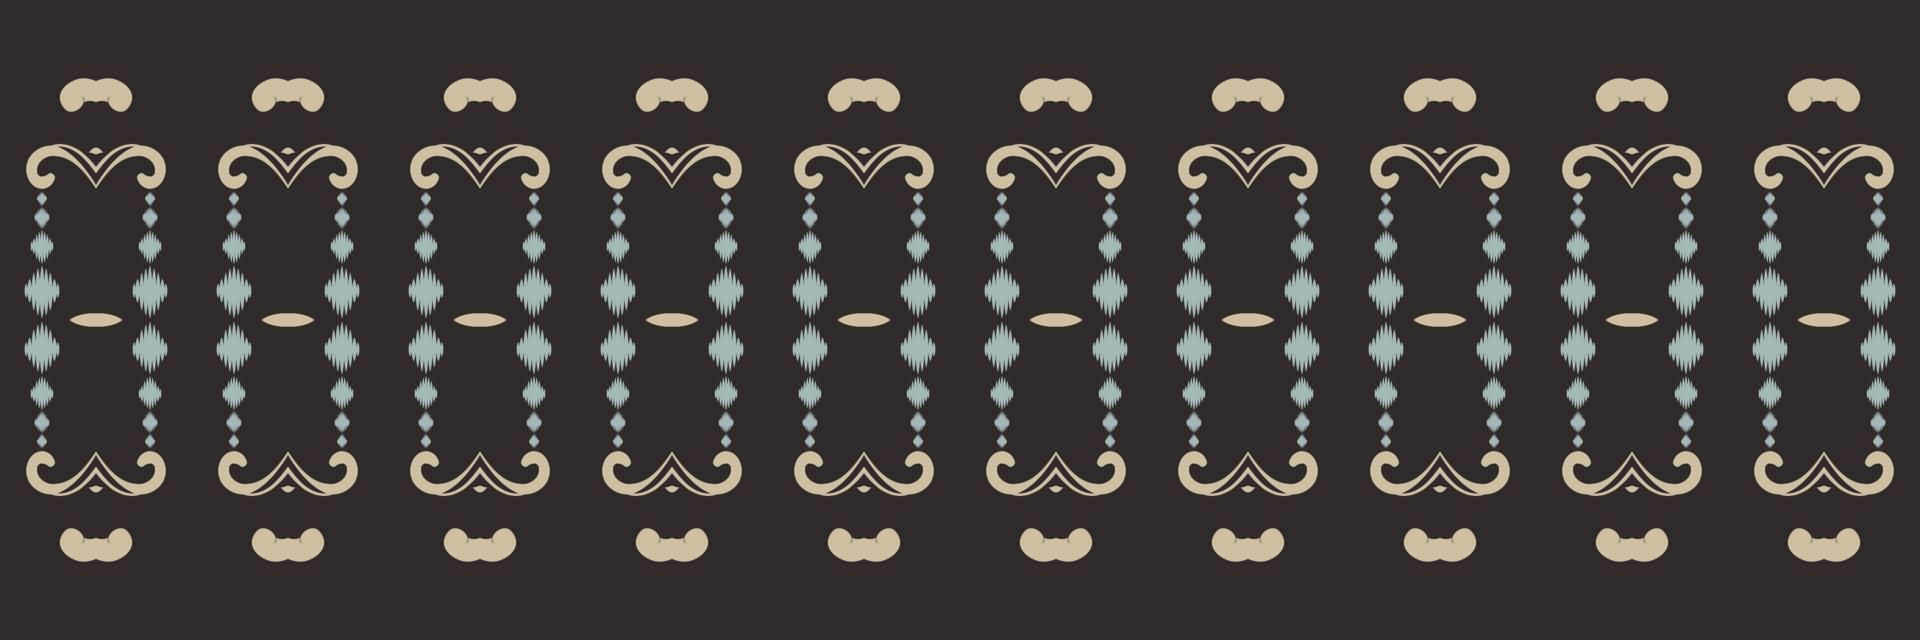 ikat pontilha padrão sem emenda de chevron tribal. étnico geométrico ikkat batik vetor digital design têxtil para estampas tecido saree mughal pincel símbolo faixas textura kurti kurtis kurtas